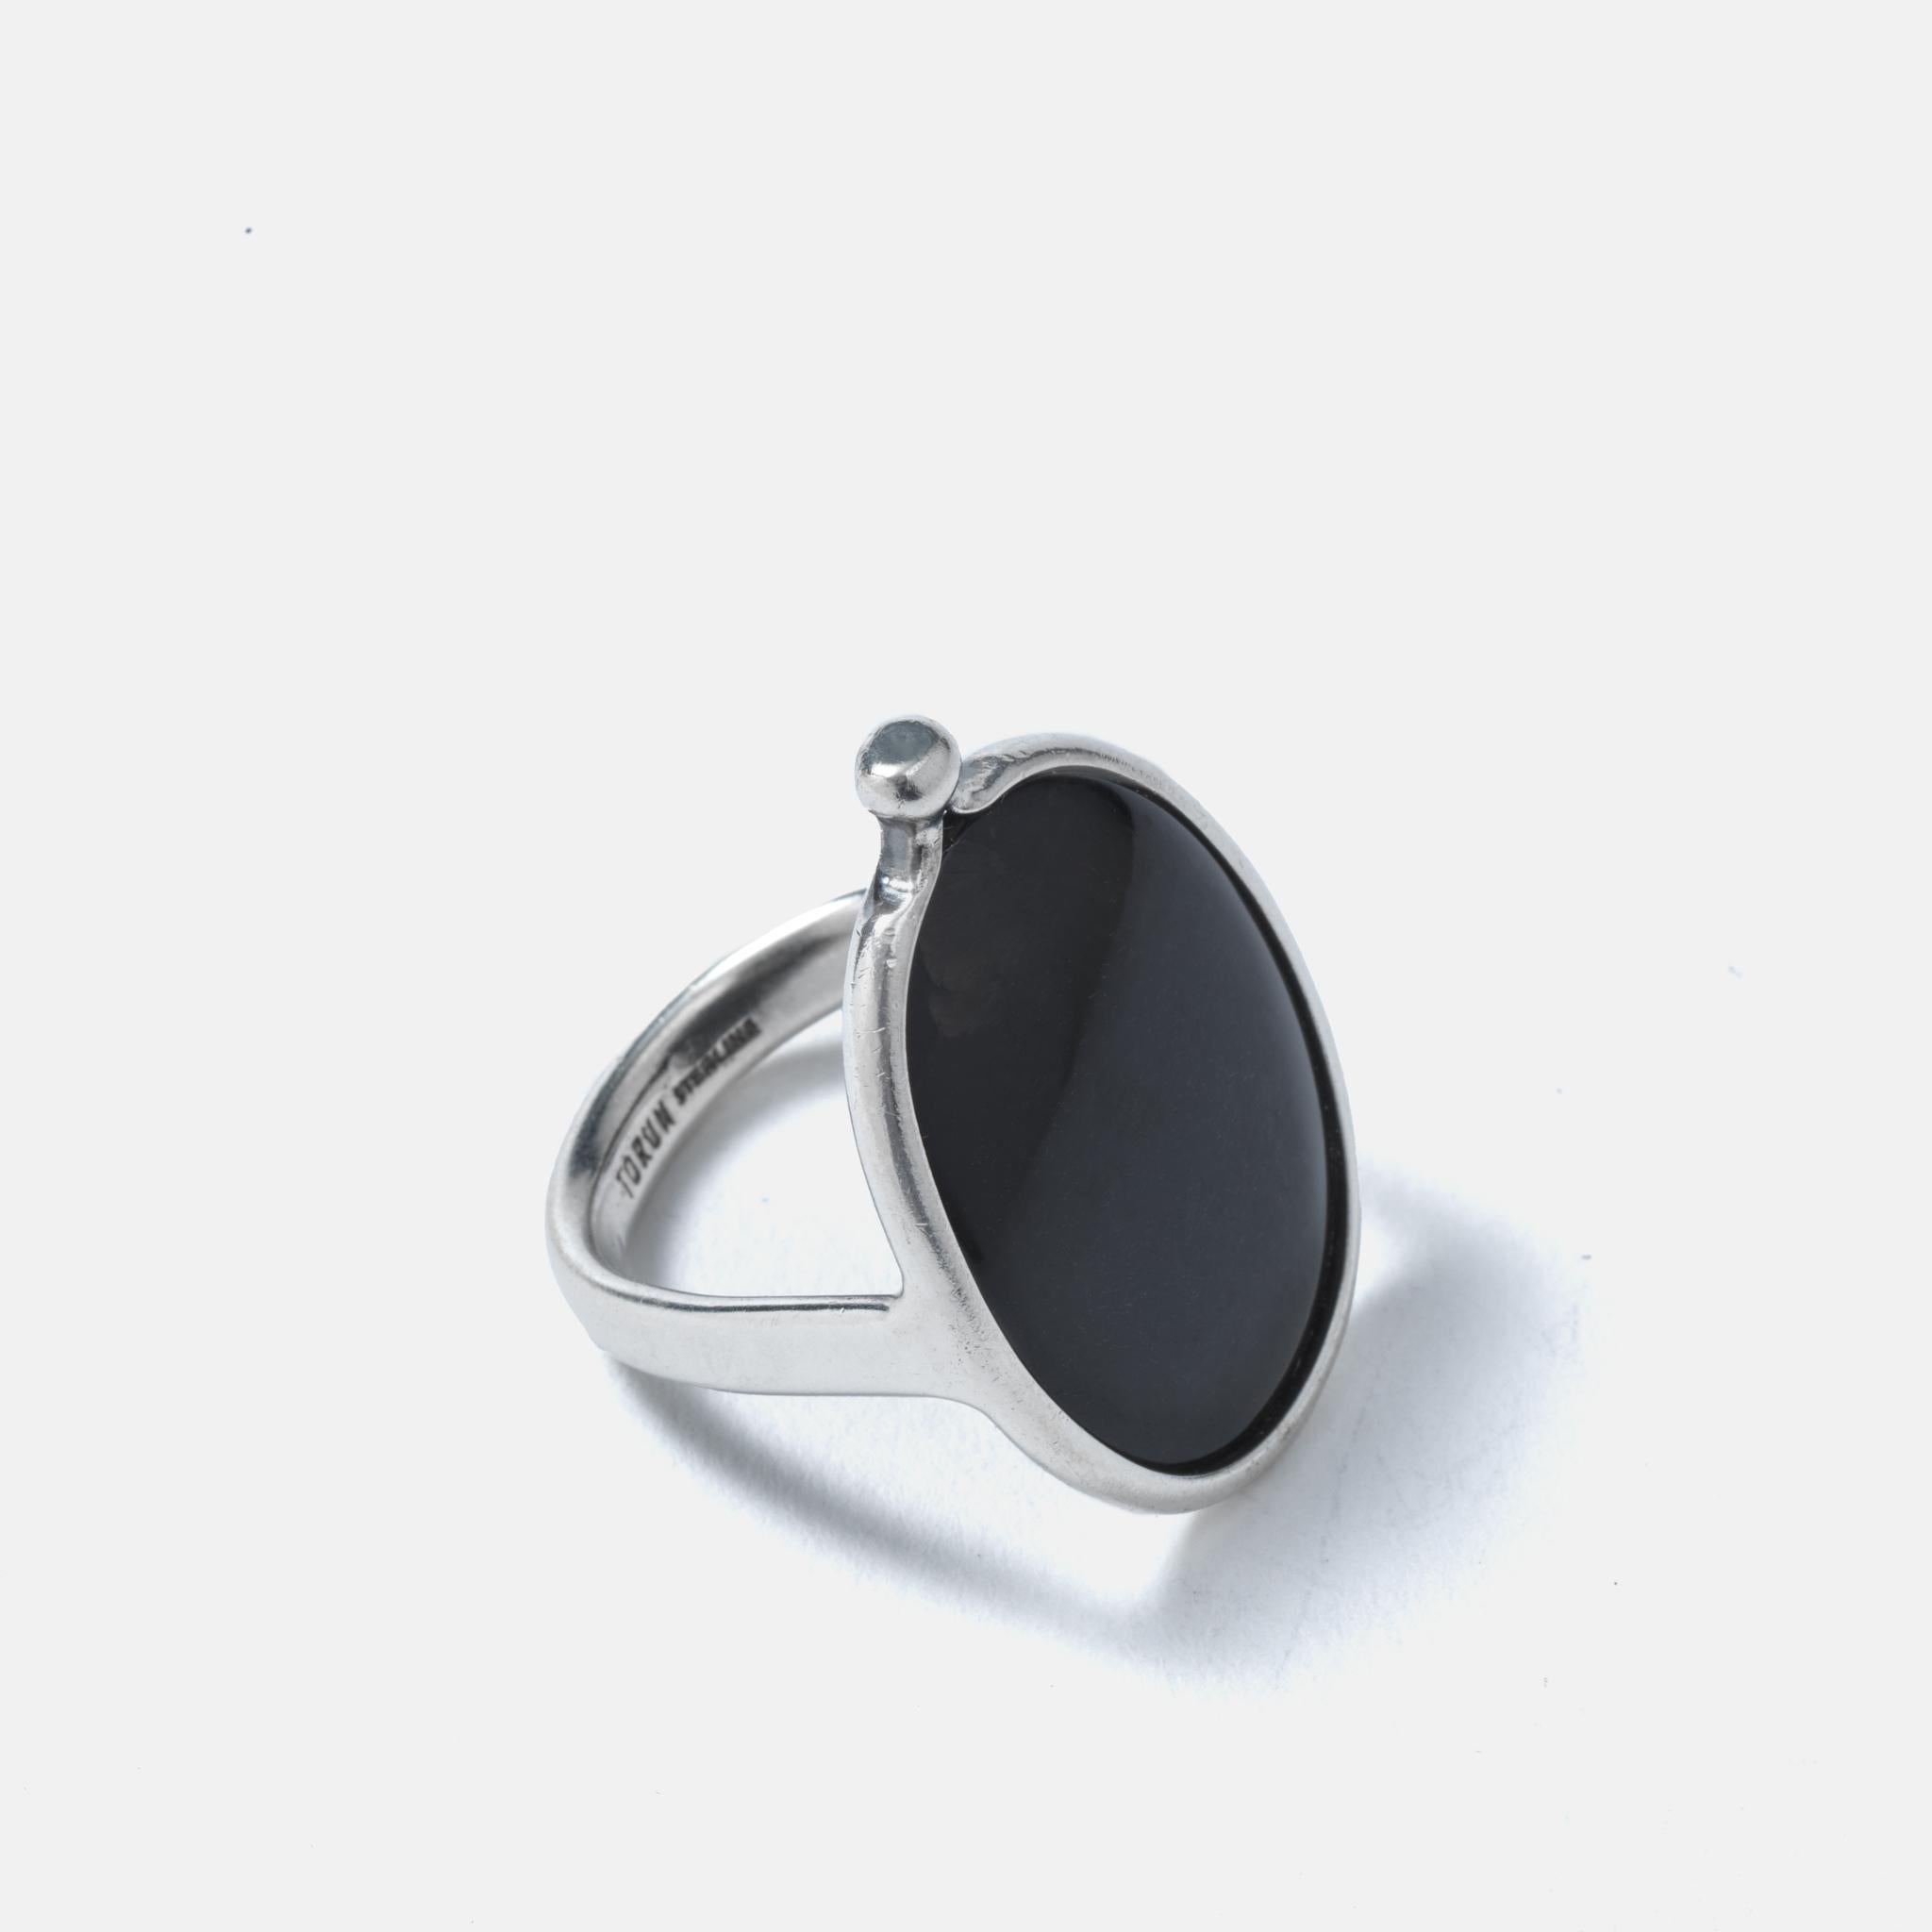 Dieser Ring aus Sterlingsilber ist mit einem ovalen Perlmuttstein verziert. Auf einer Seite endet die Rahmung in einem Bündel, das dem Ring ein faszinierendes Aussehen verleiht. Der Perlmuttstein hat eine mattschwarze Farbe und damit etwas, das wie